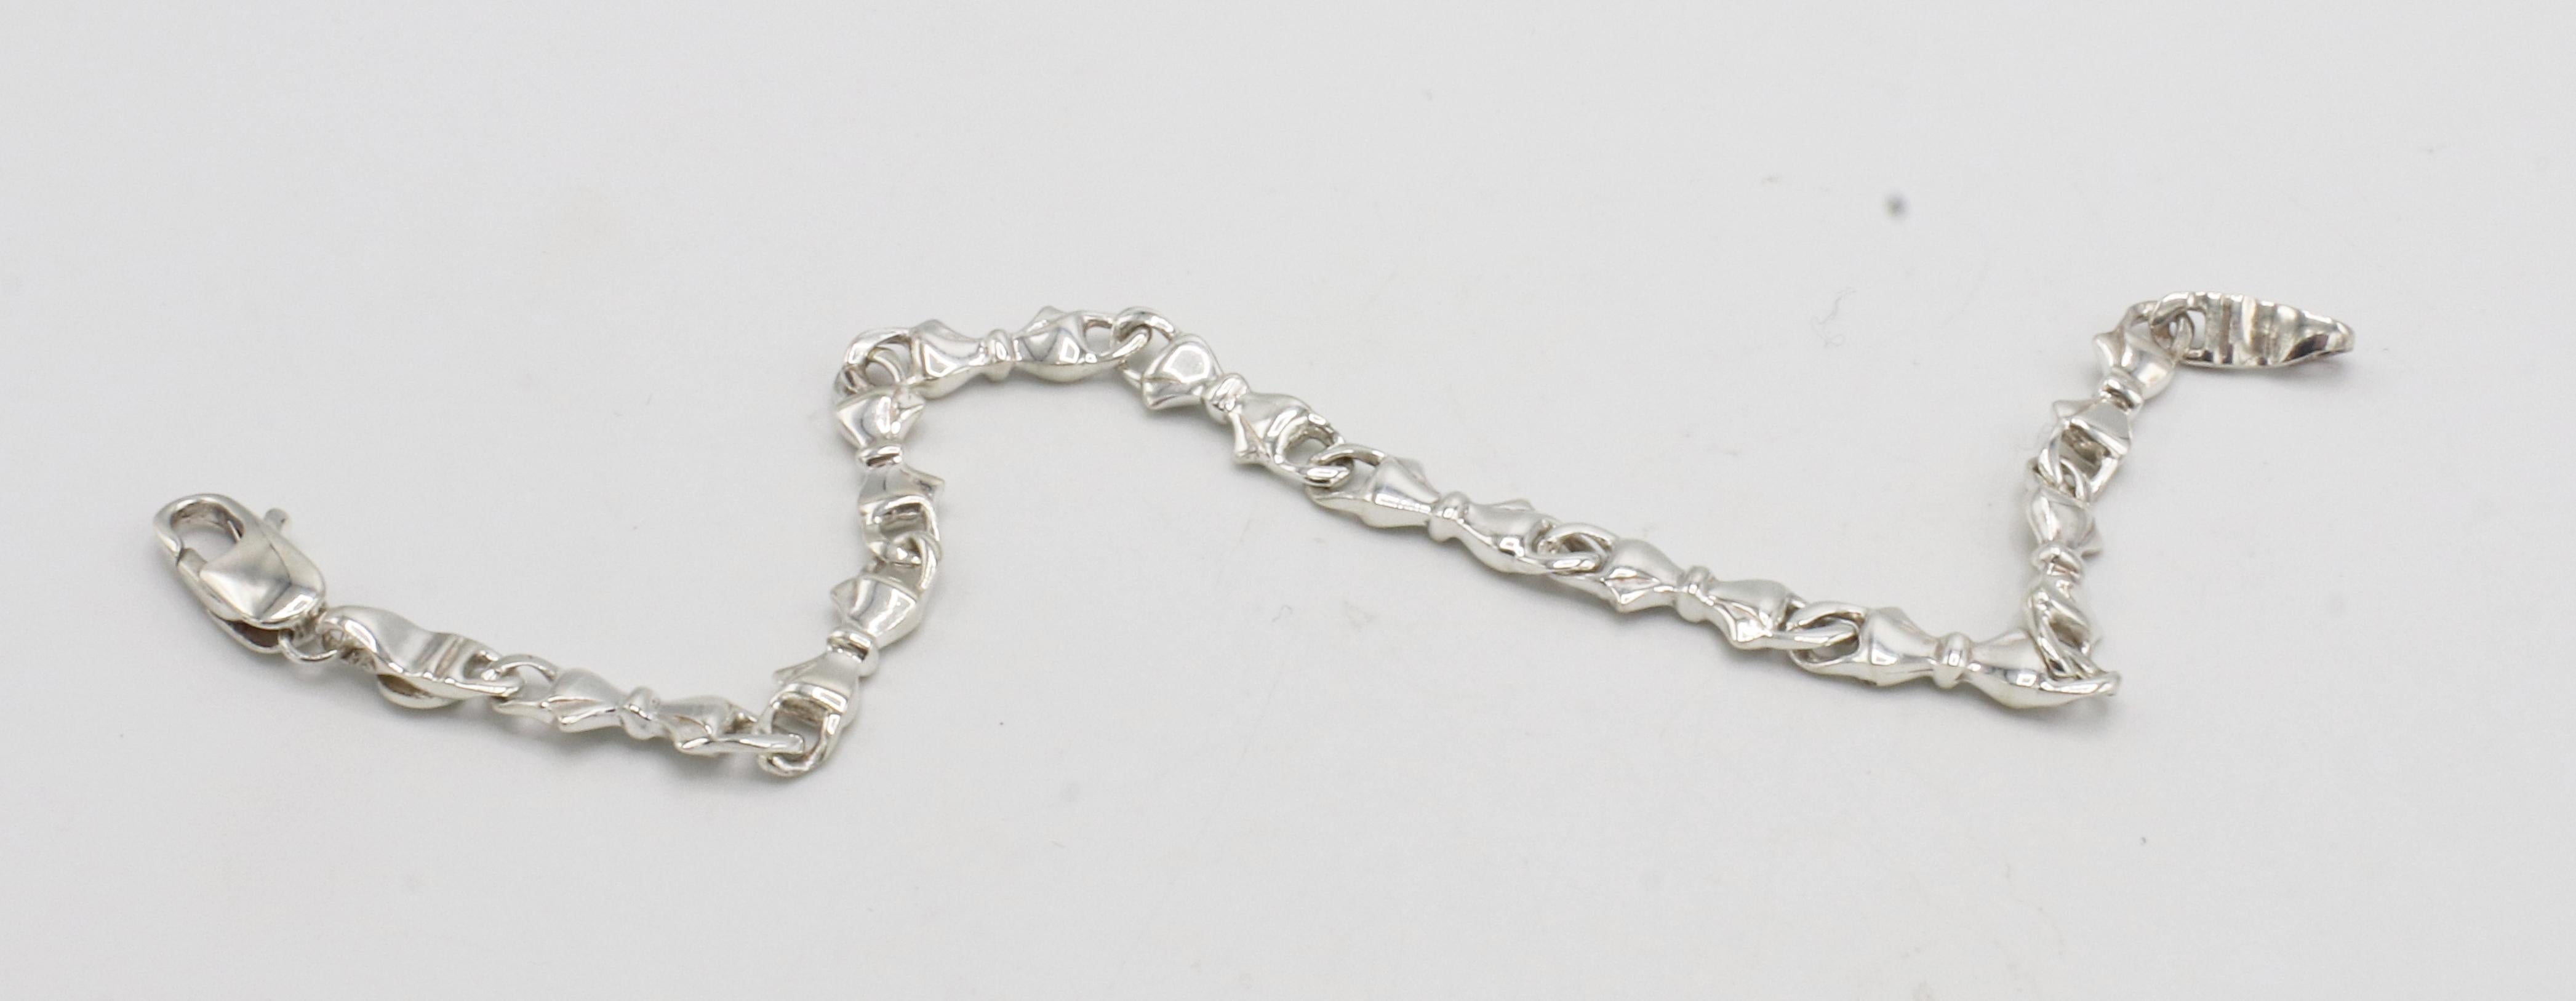 Tiffany & Co. Bracelet à maillons en argent sterling avec nœud 
Métal : Argent sterling
Poids : 9,68 grammes
Longueur : 7,5 pouces
Largeur : 5mm
Signé : T&Co. 925
